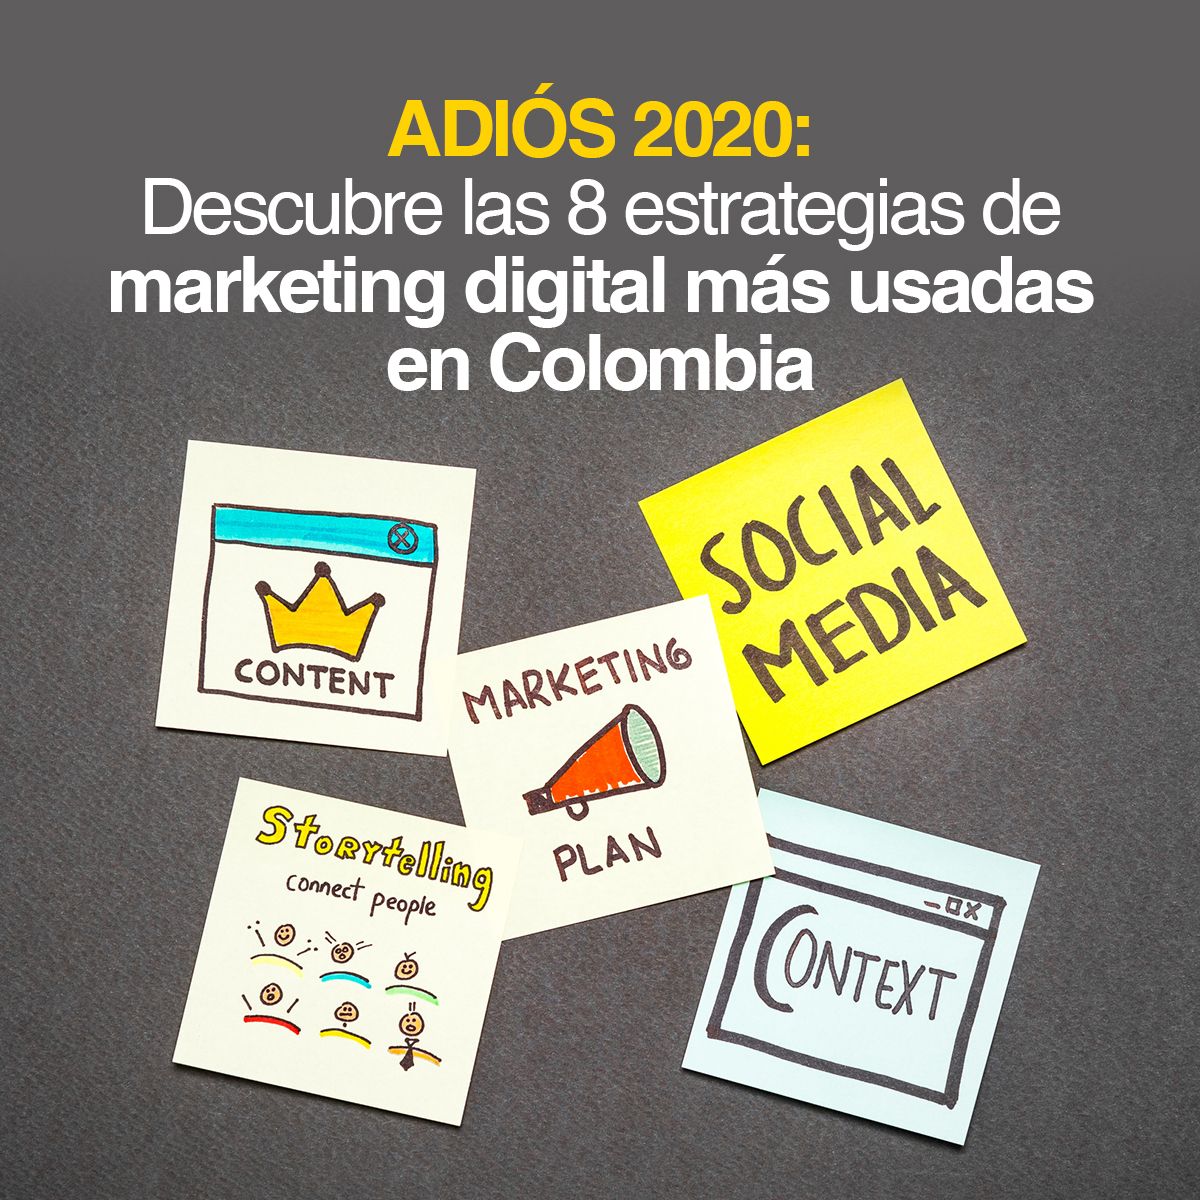 ADIÓS 2020: DESCUBRE LAS 8 ESTRATEGIAS DE MARKETING DIGITAL MÁS USADAS EN COLOMBIA